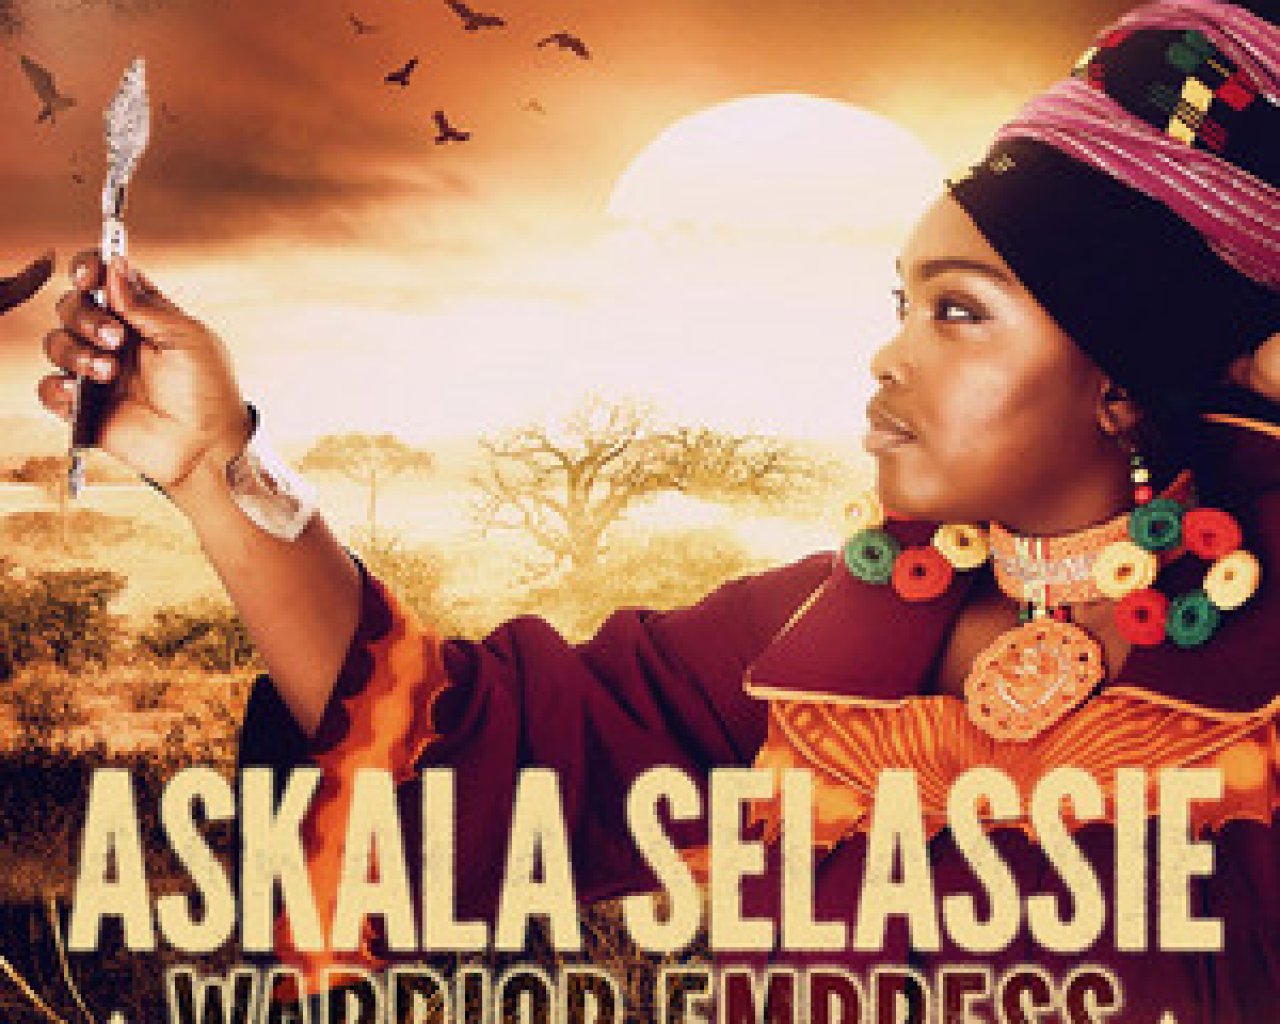 Askala Selassie